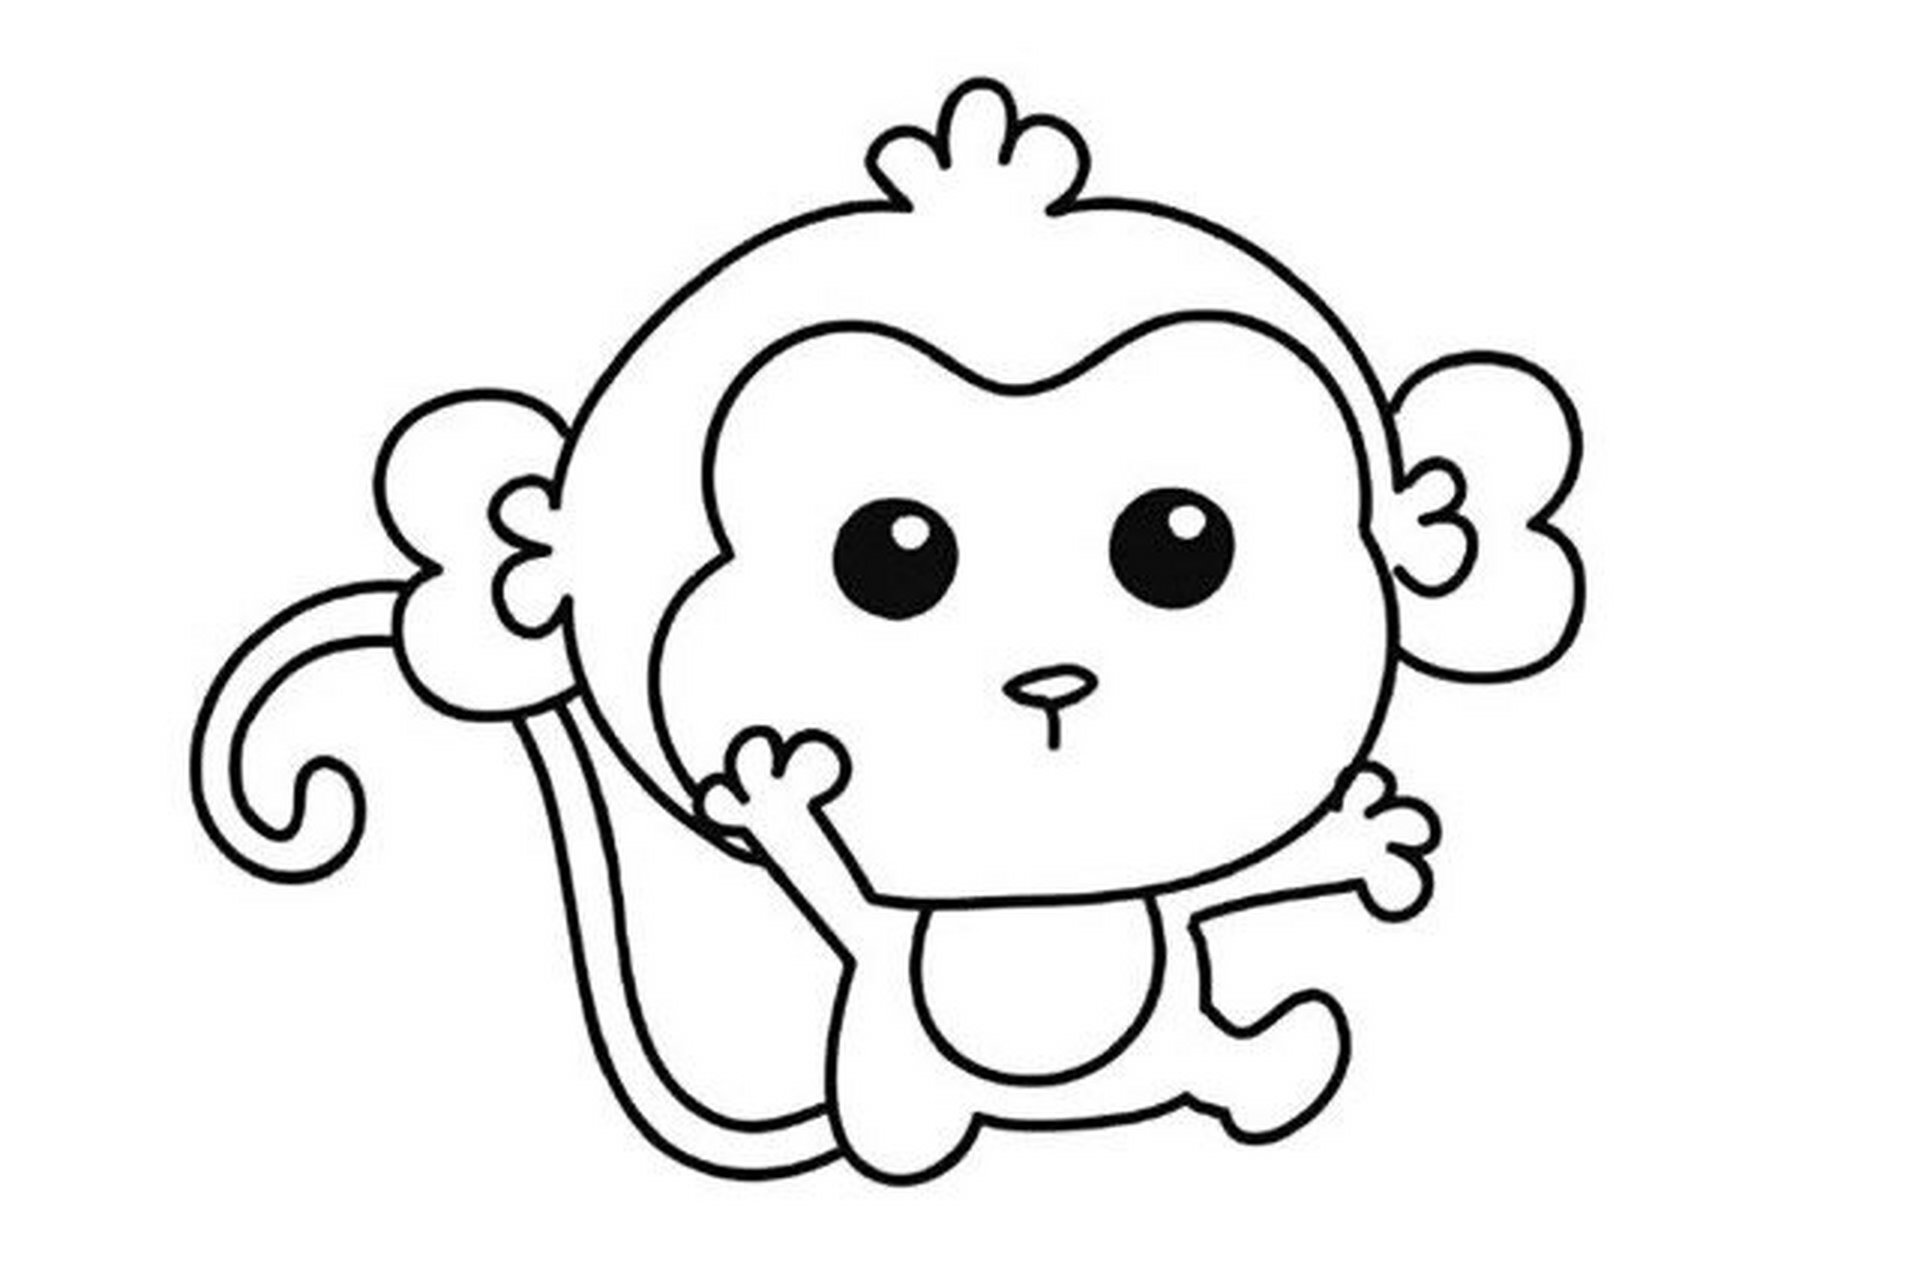 小猴子简笔画/创意美术/简笔画素材/儿童画 小猴子美术,简单的结构